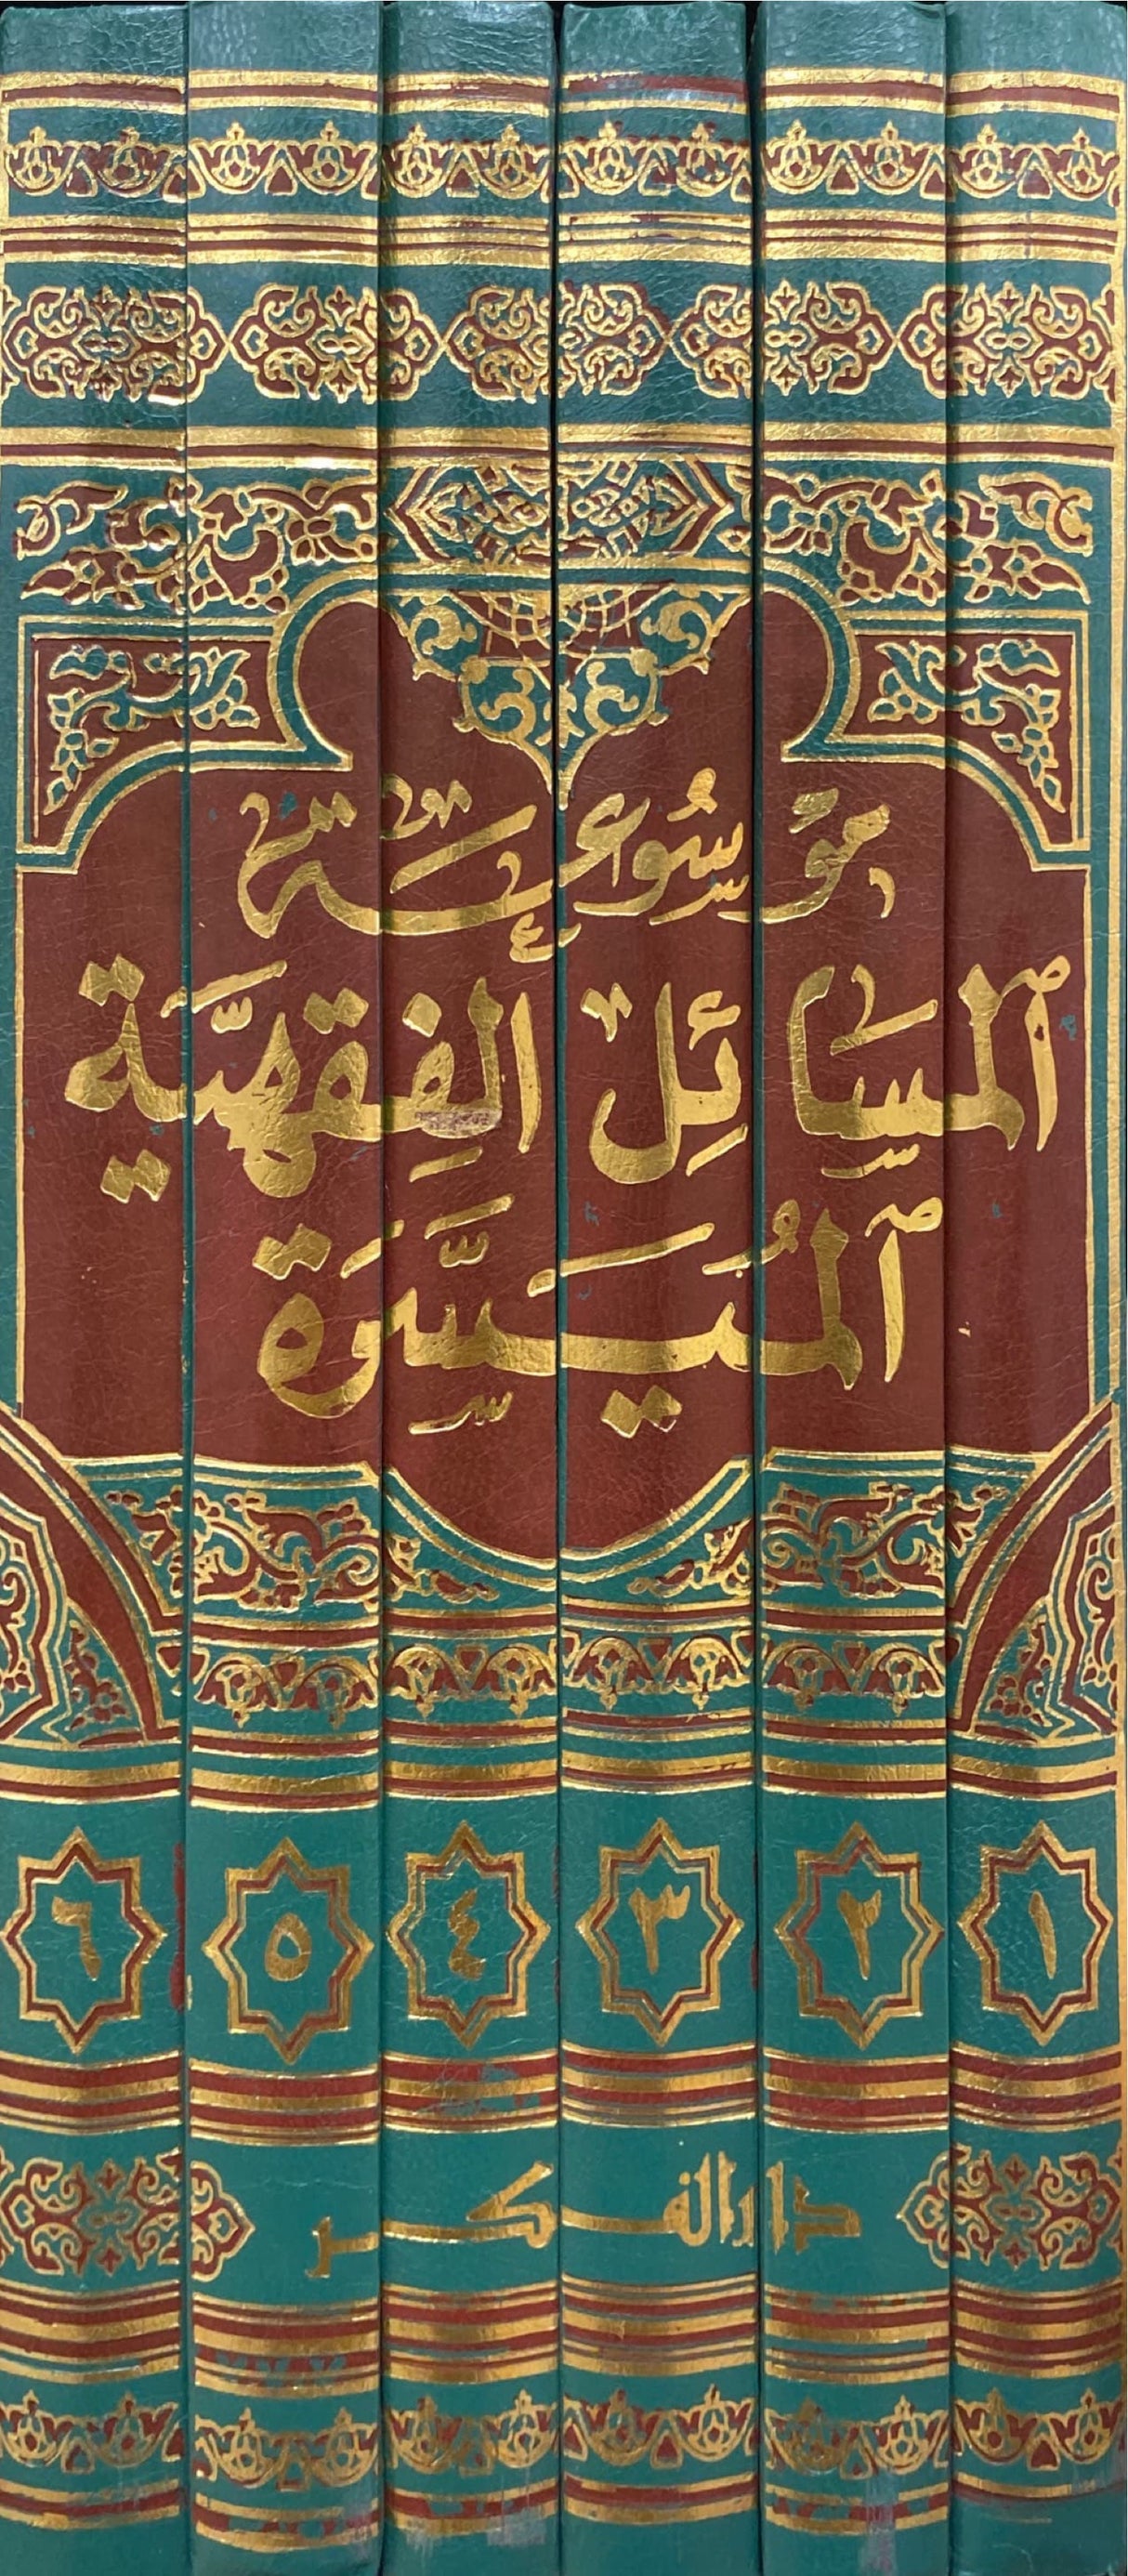 موسوعة المسائل الفقهية الميسرة     Mawsuatul Masail Al Muyasara (6 Volume Set)